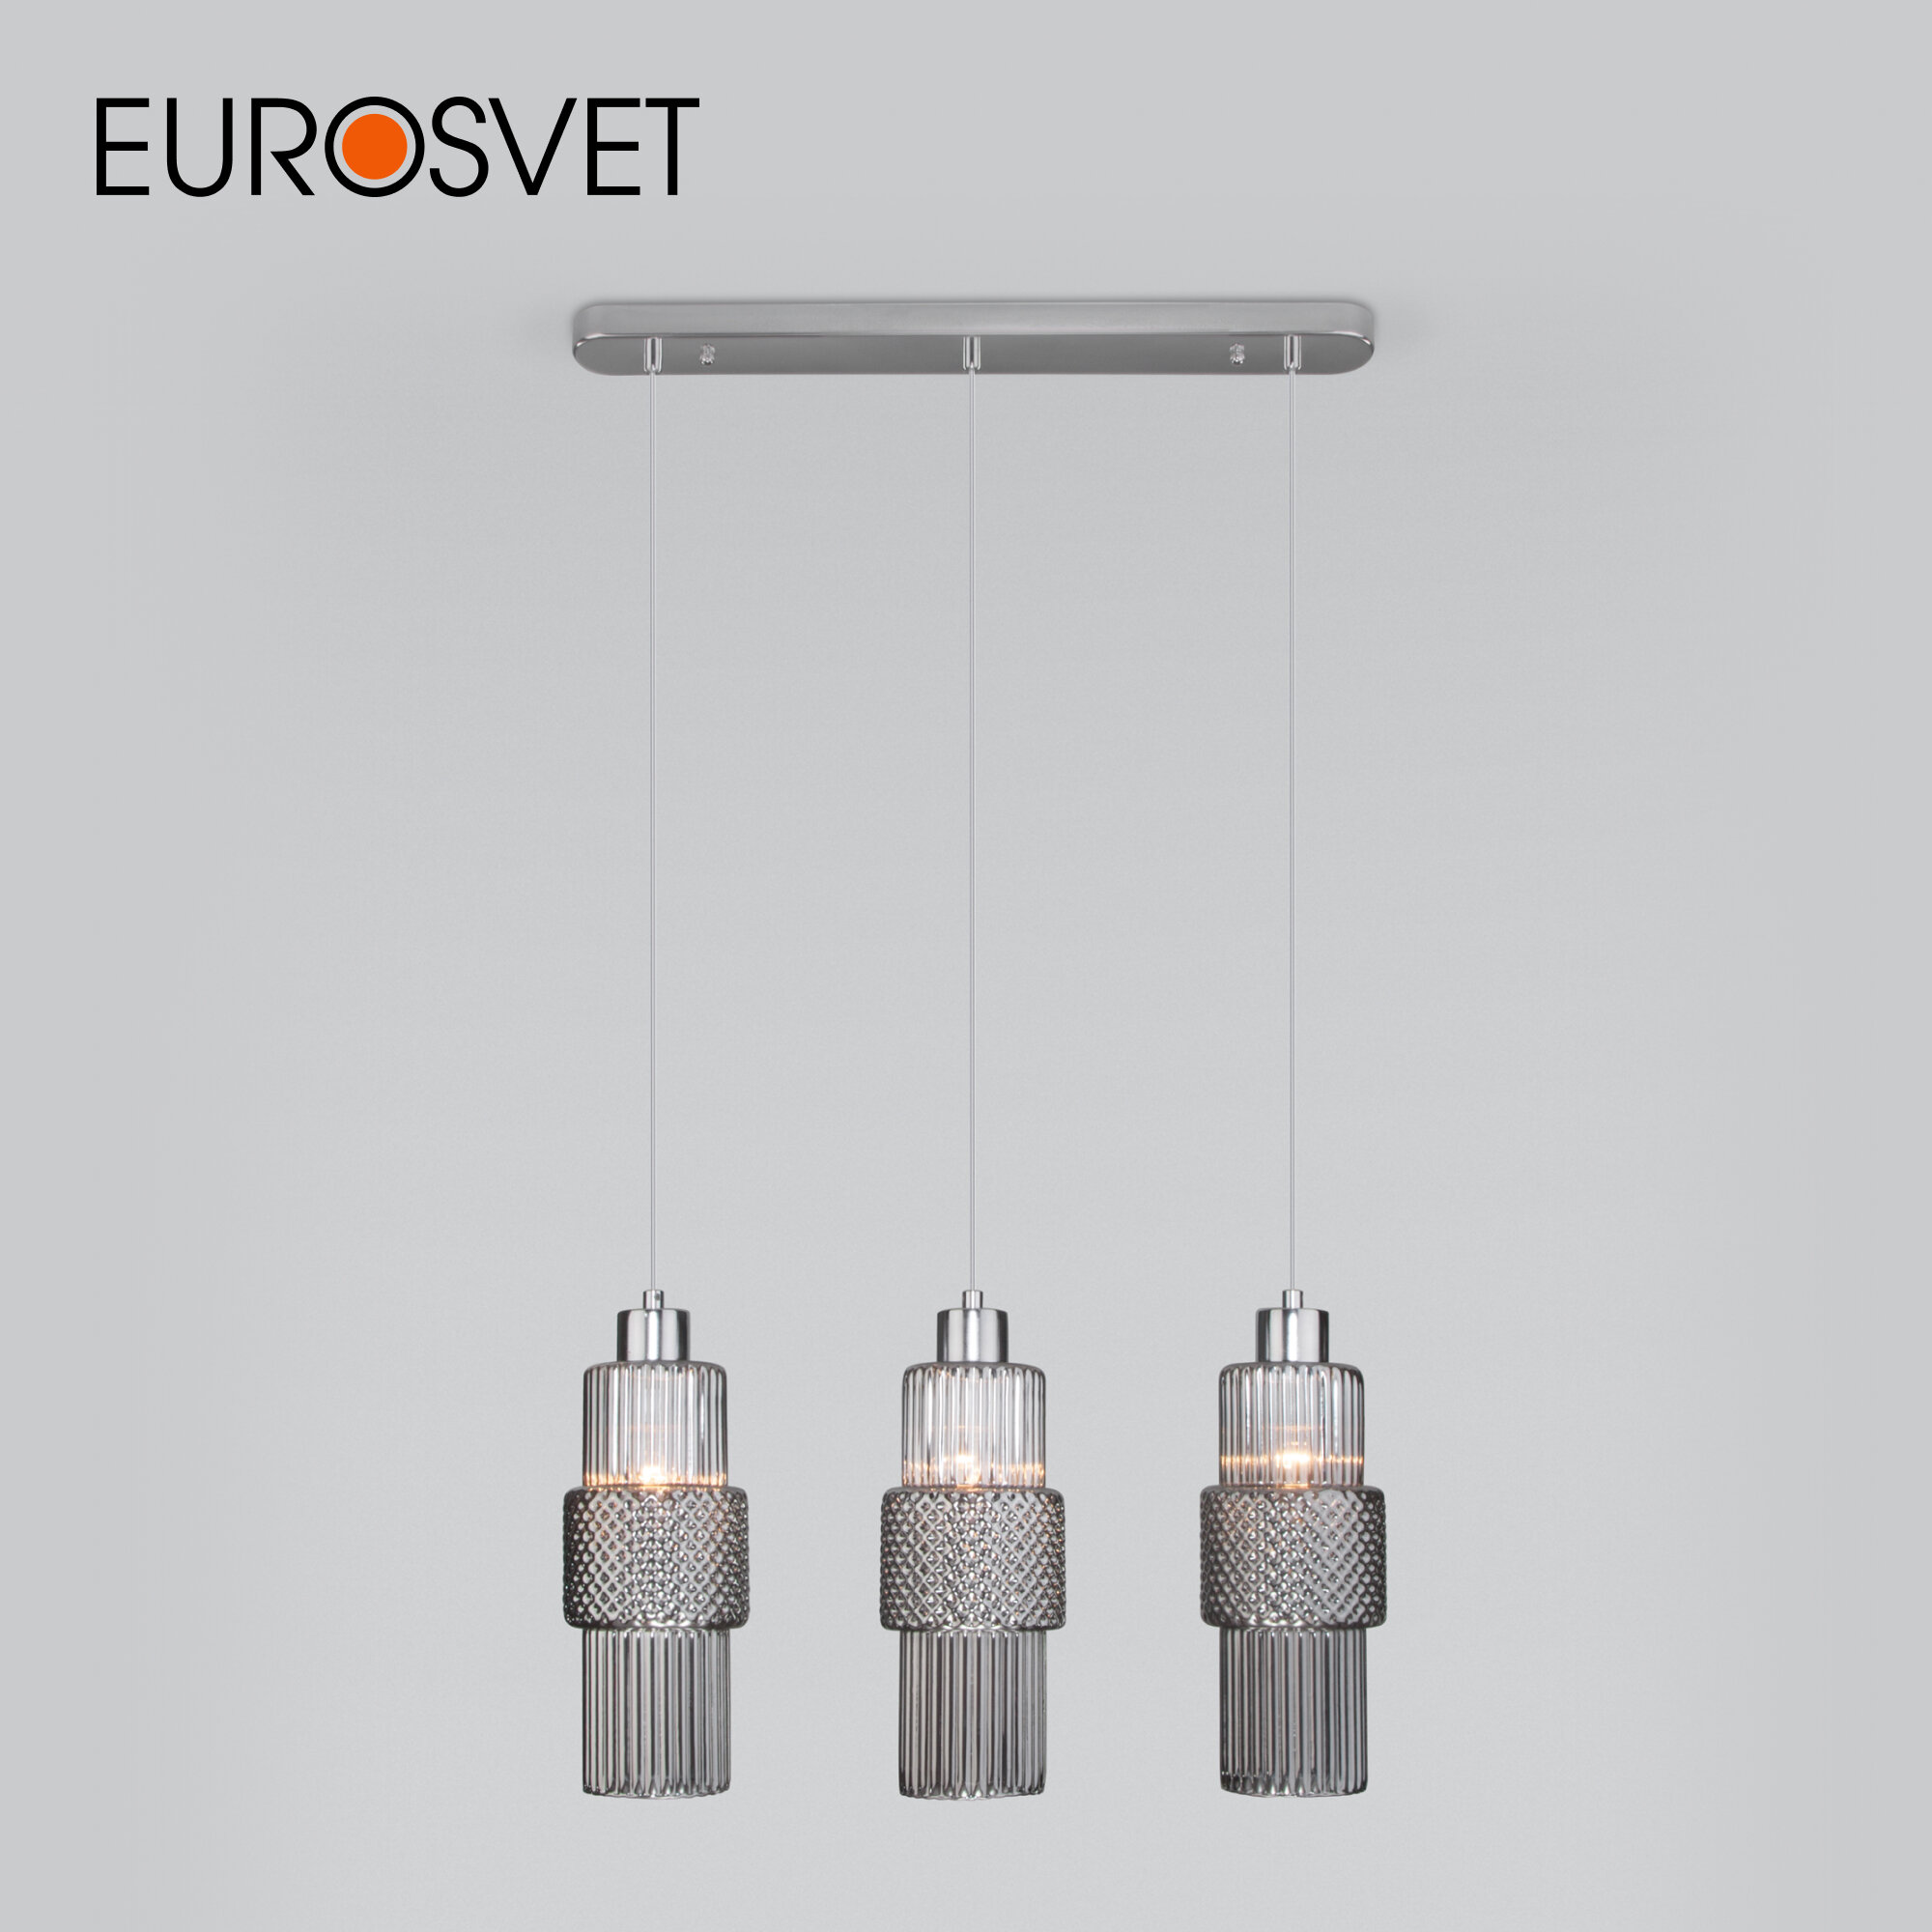 Подвесной светильник со стеклянными плафонами Eurosvet Soho 50209/3, цвет хром, 3 плафона